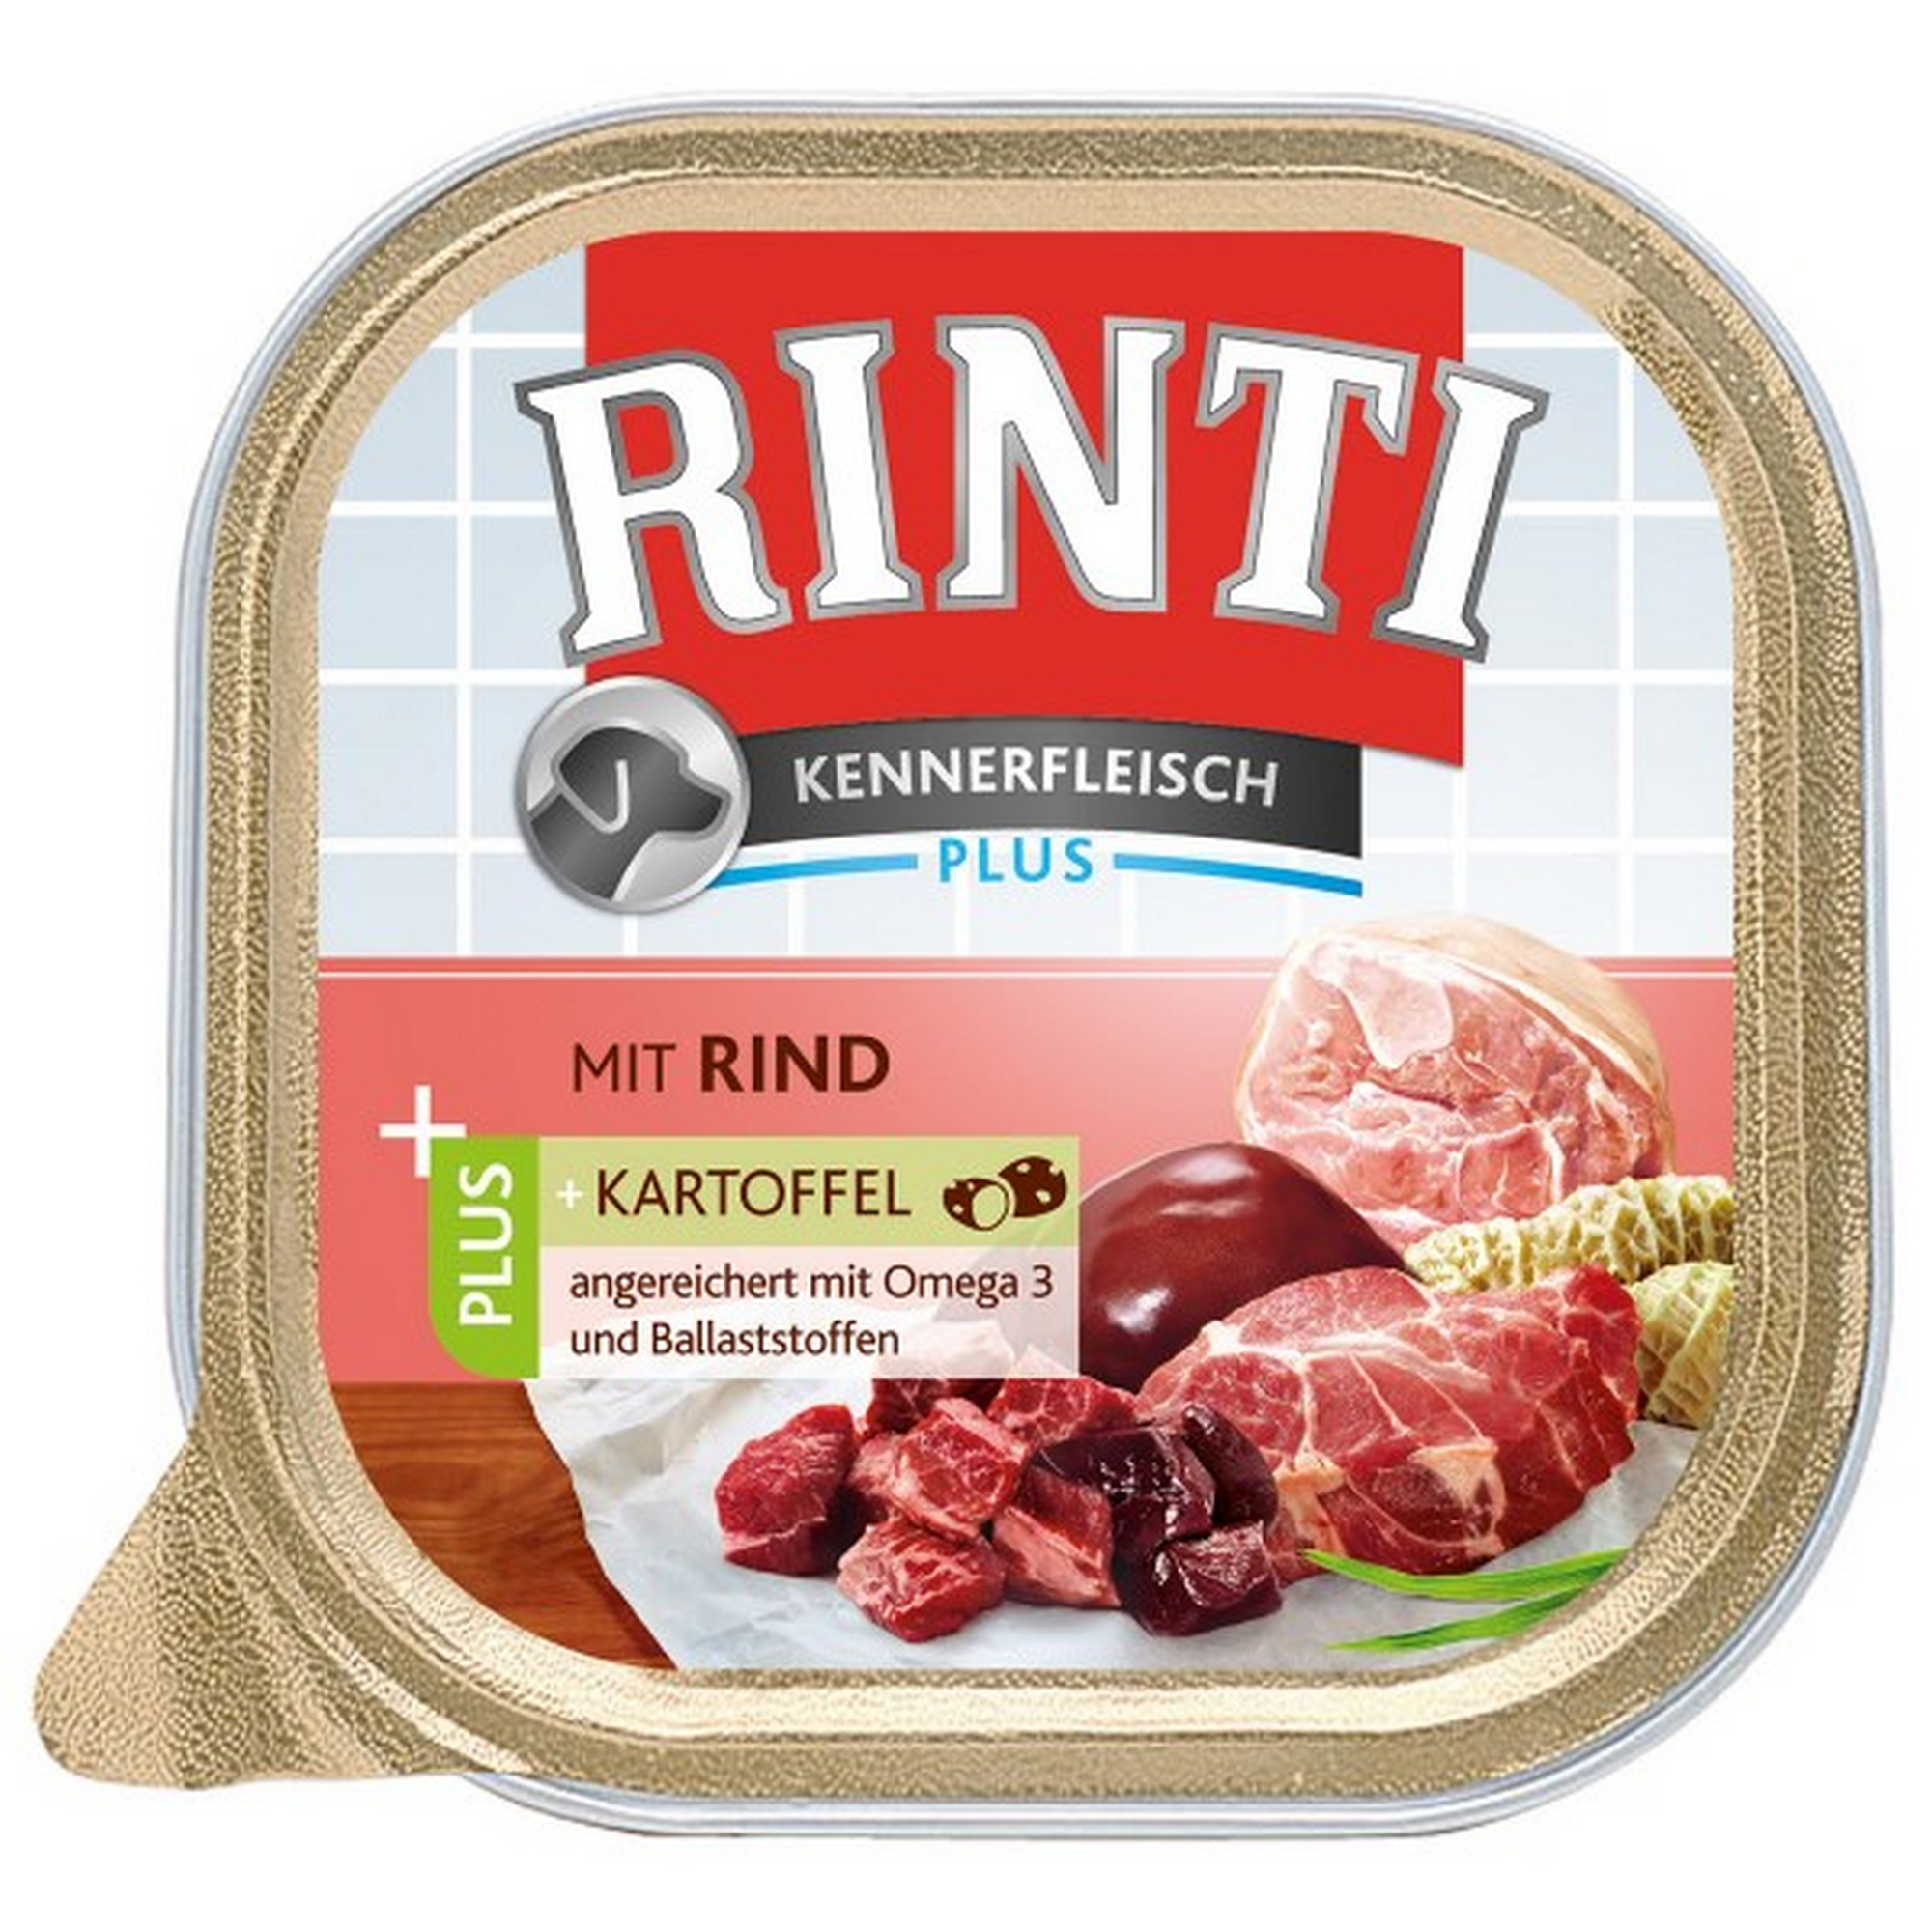 Hundenassfutter 'Kennerfleisch' mit Rind plus Kartoffel 300 g + product picture